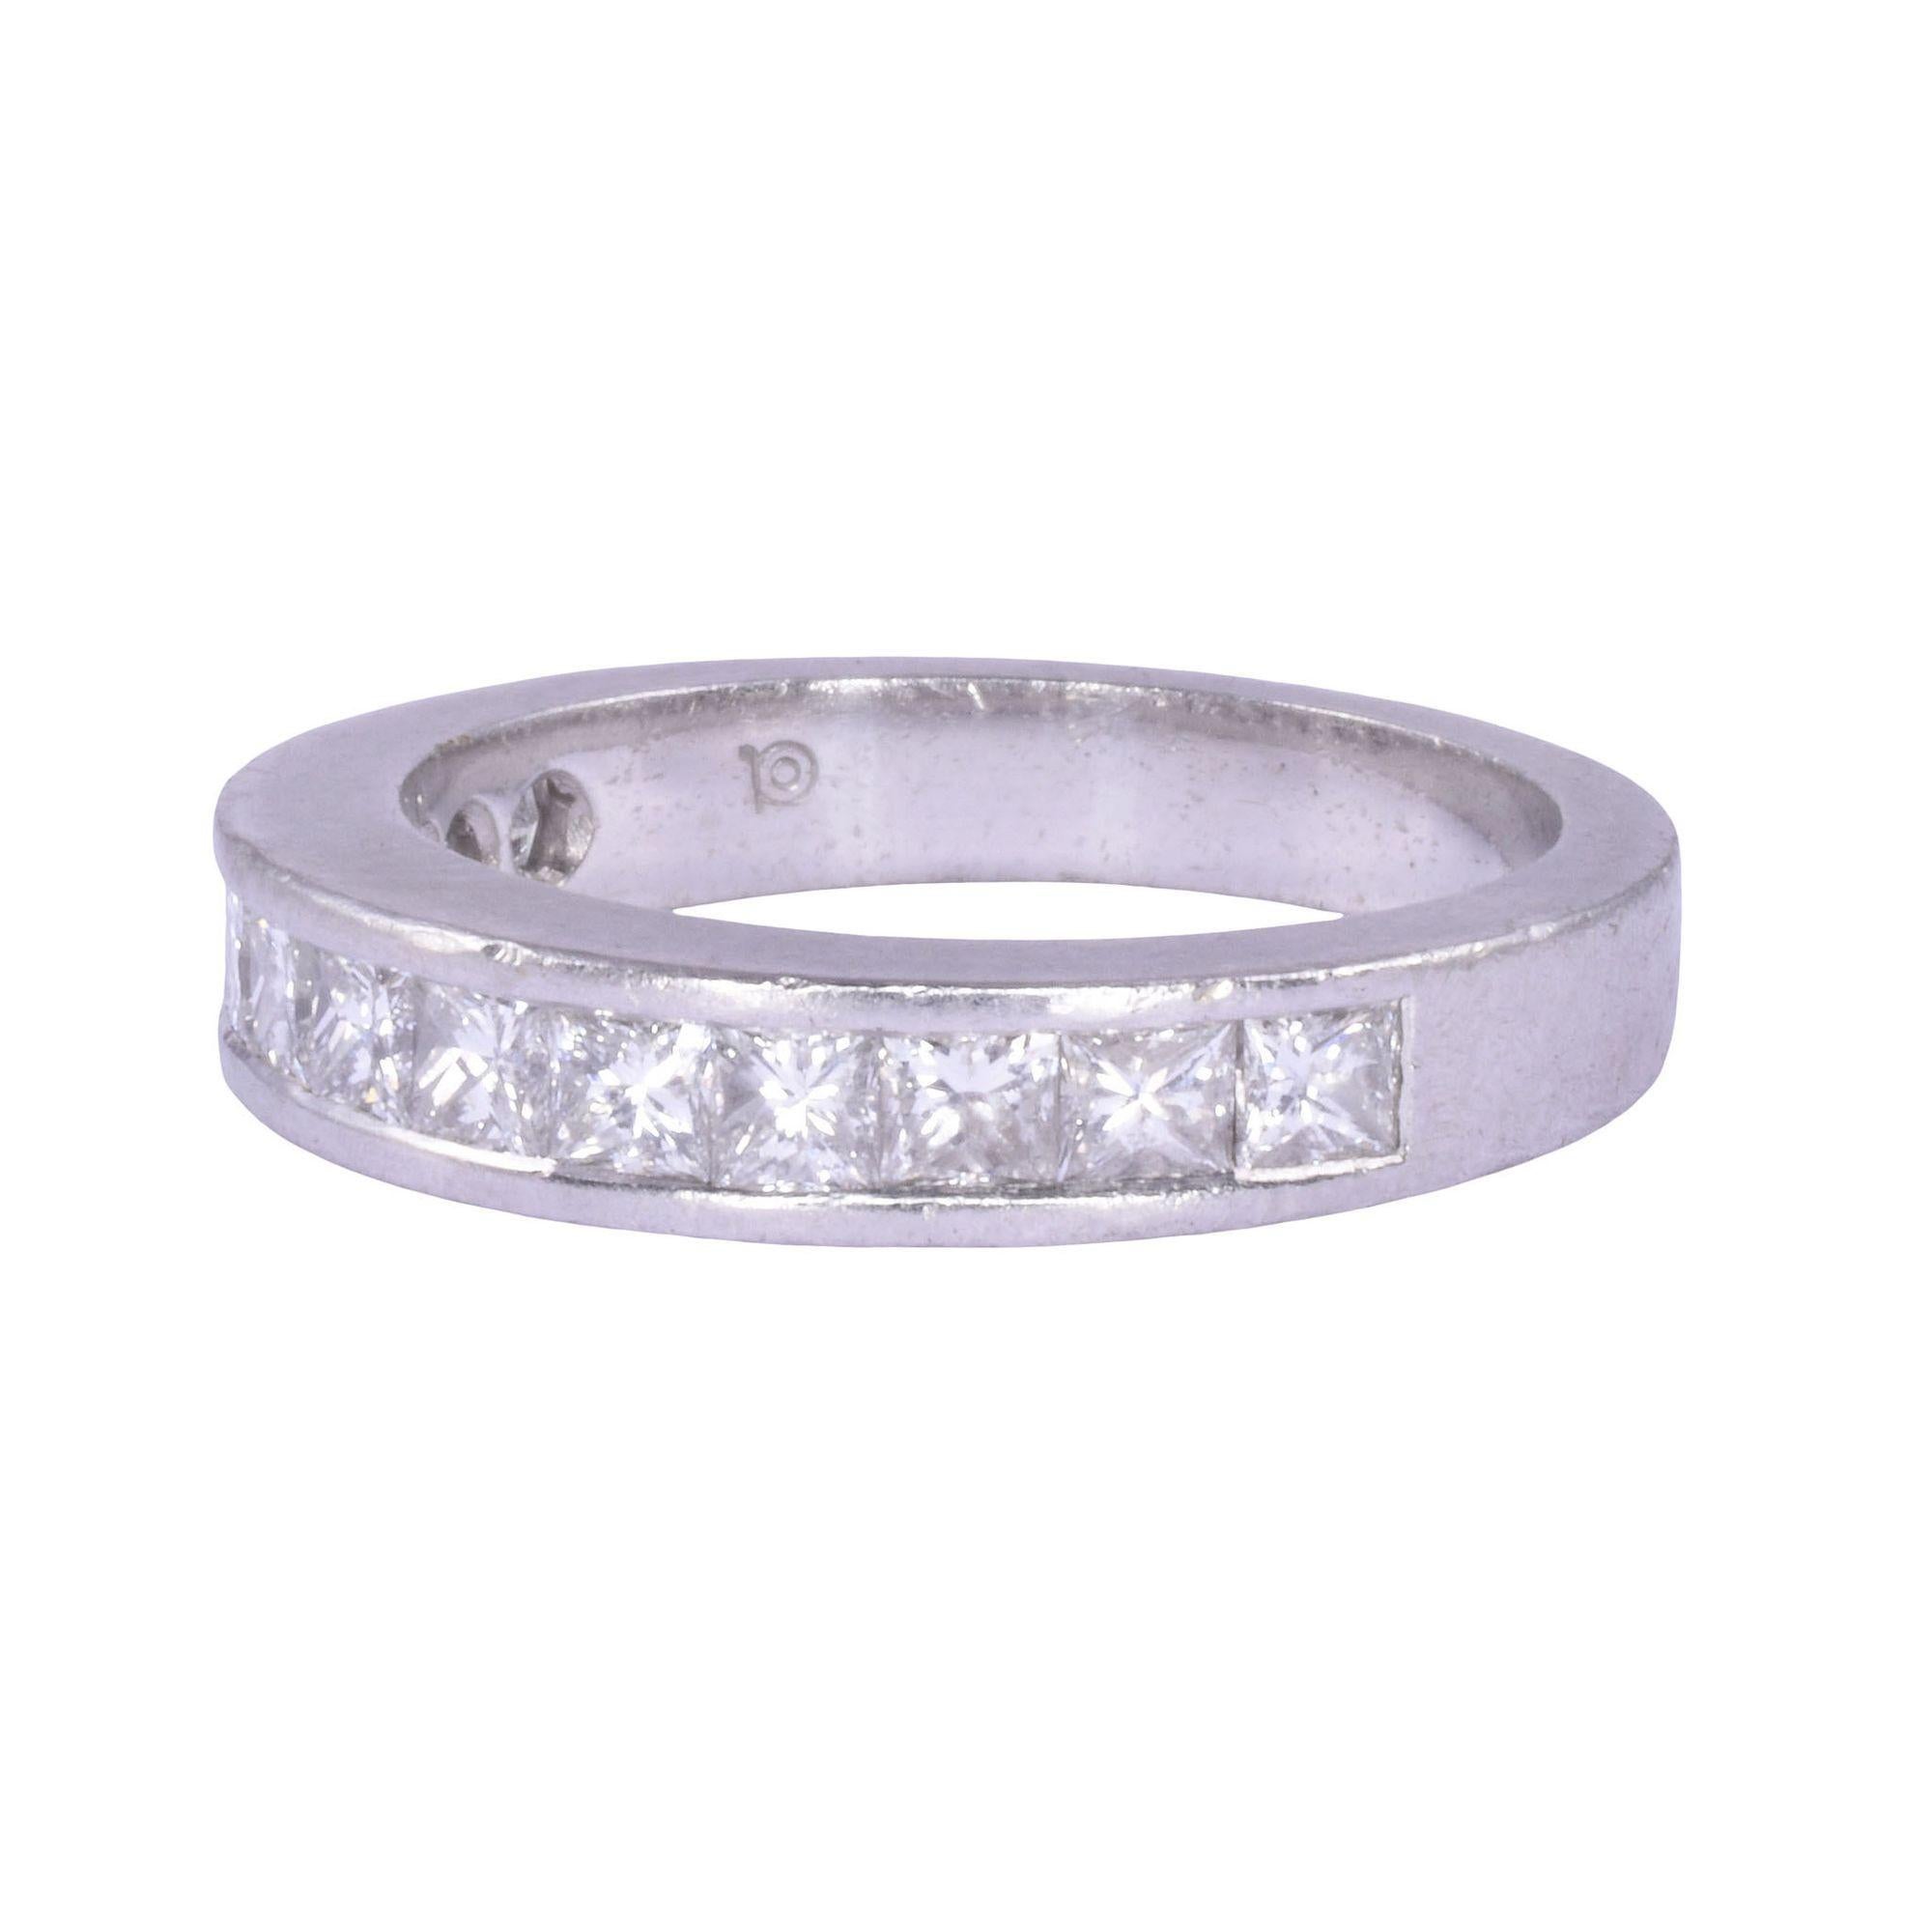 Estate princess cut diamond platinum band. Dieses Platinband besteht aus 1,07 Karat Diamanten im Prinzessschliff mit einer Reinheit von VS1-2 und einer Farbe von H-I. Dieses Platin-Diamantband wiegt 6,56 Gramm, hat die Größe 5,25 und wird auf 4.000